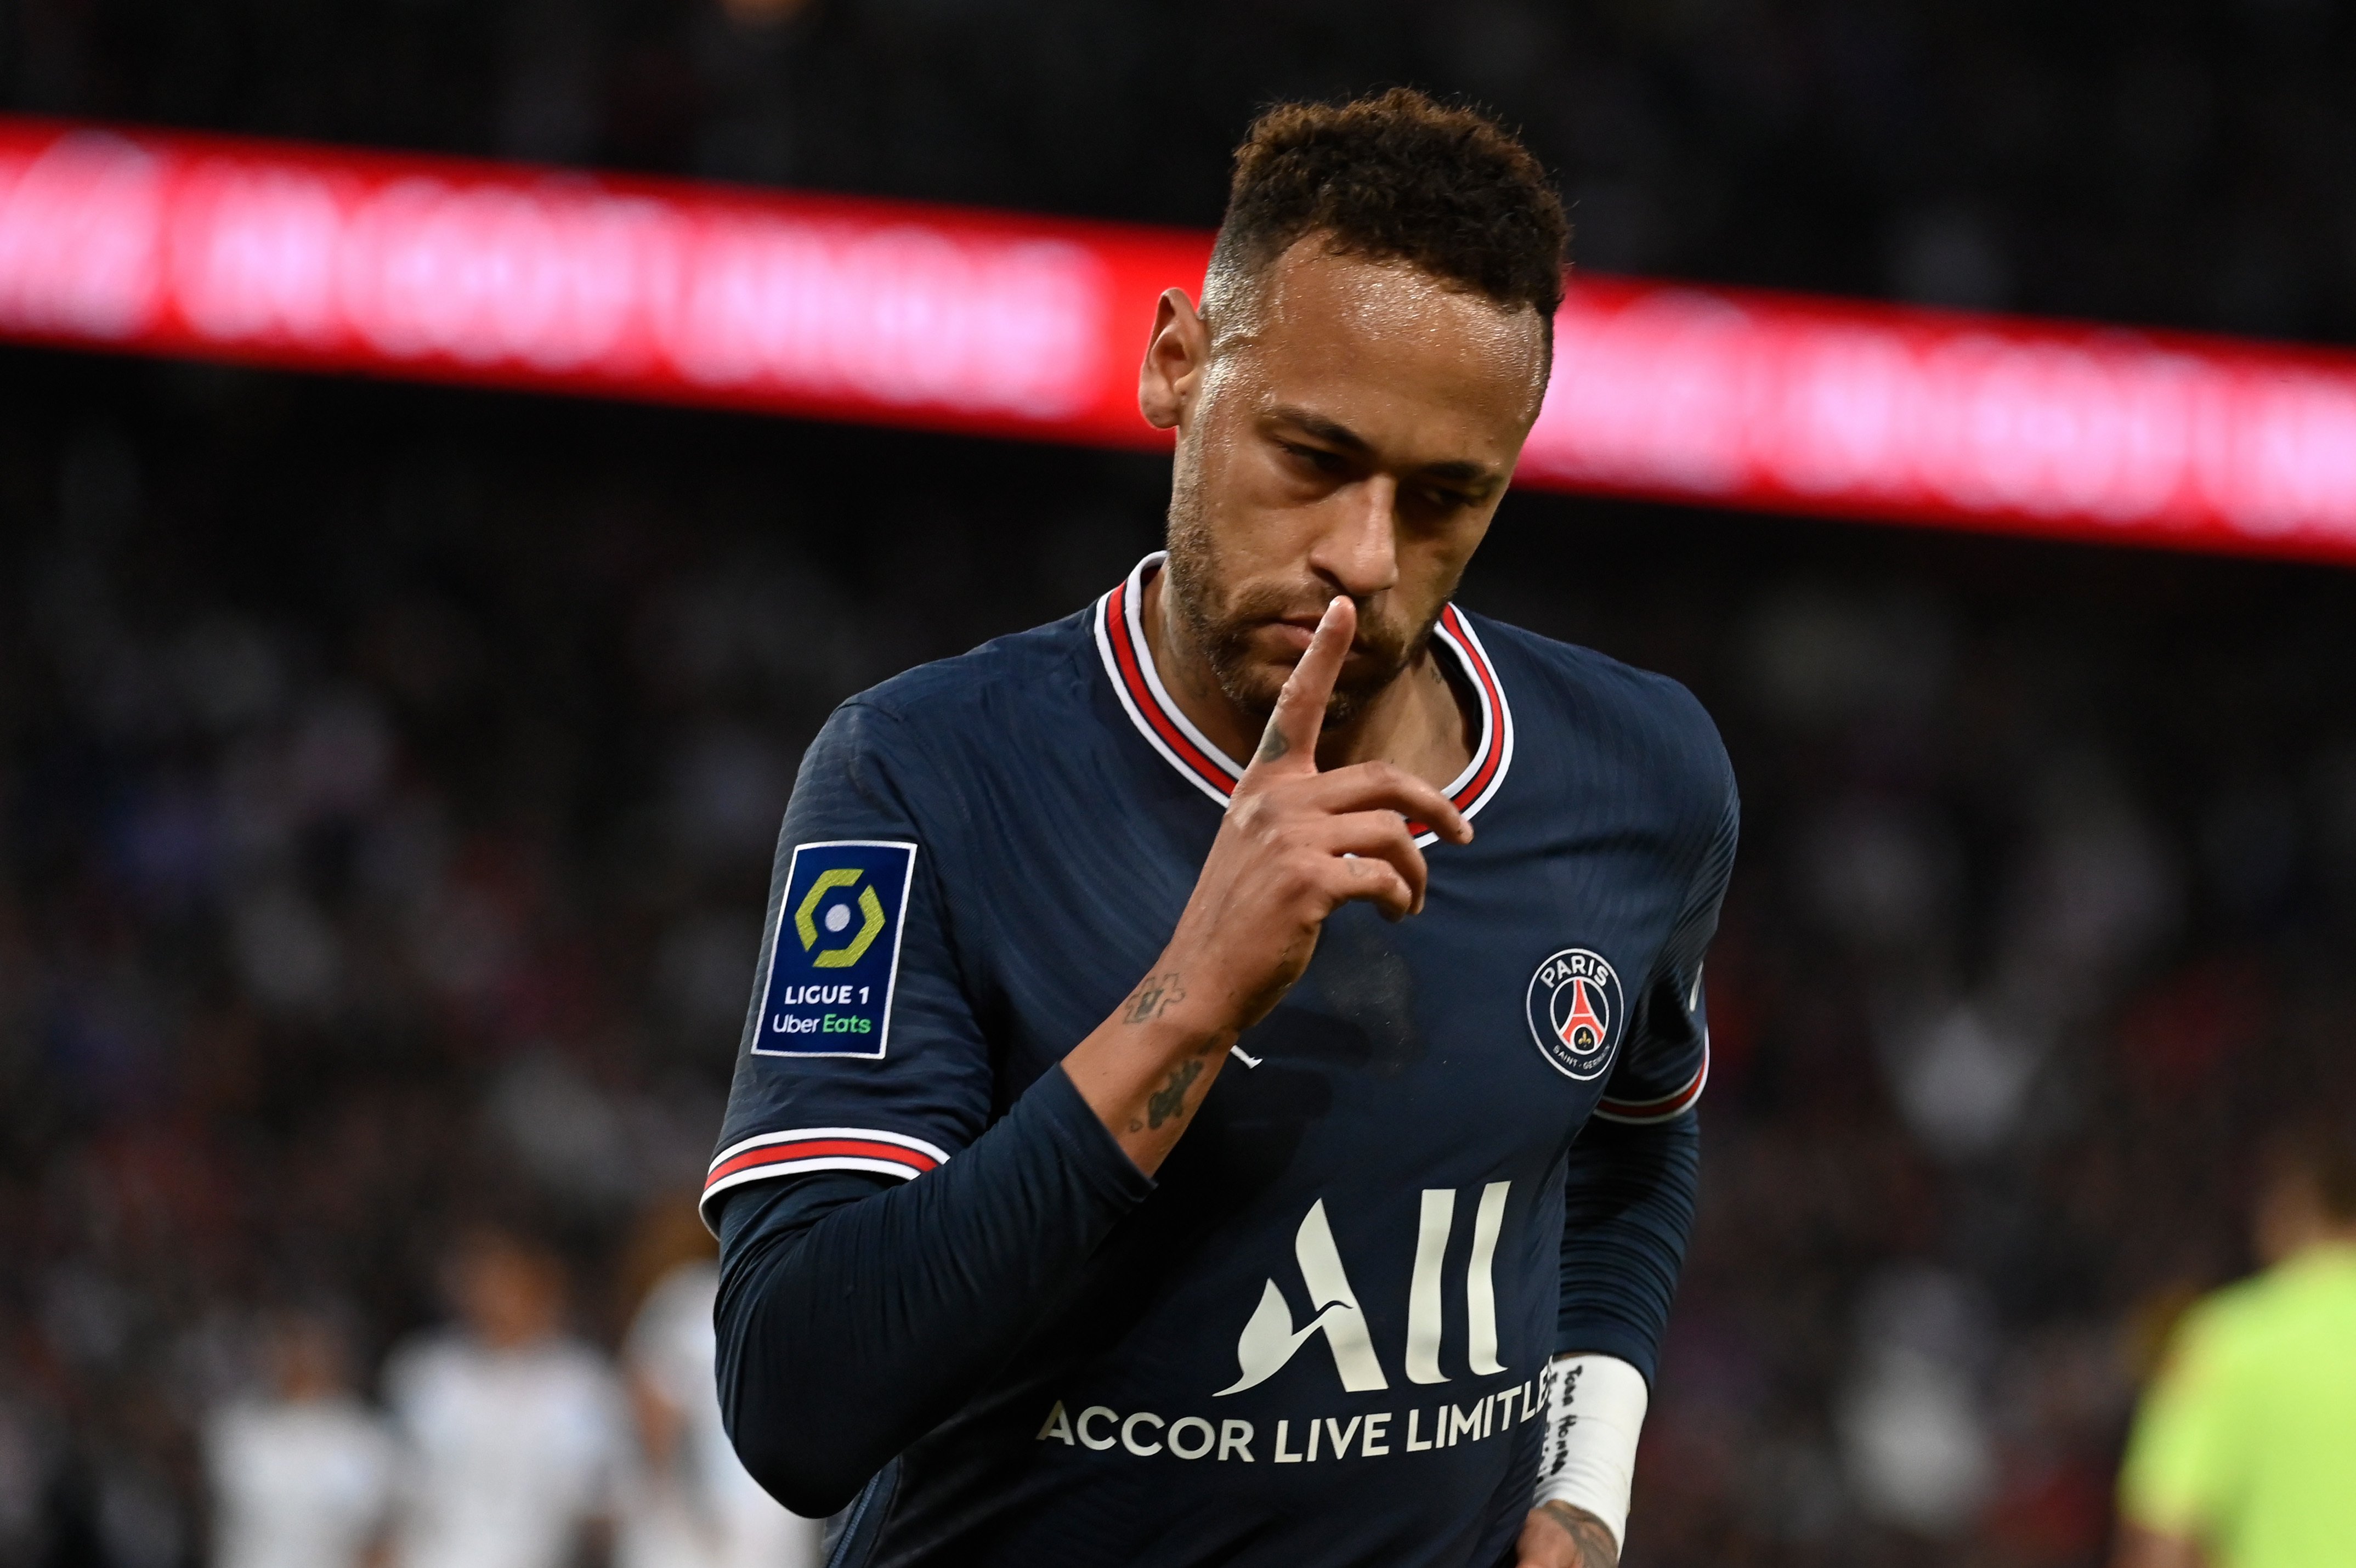 Oferta de 120 millones por Neymar, sacude el mercado de fichajes